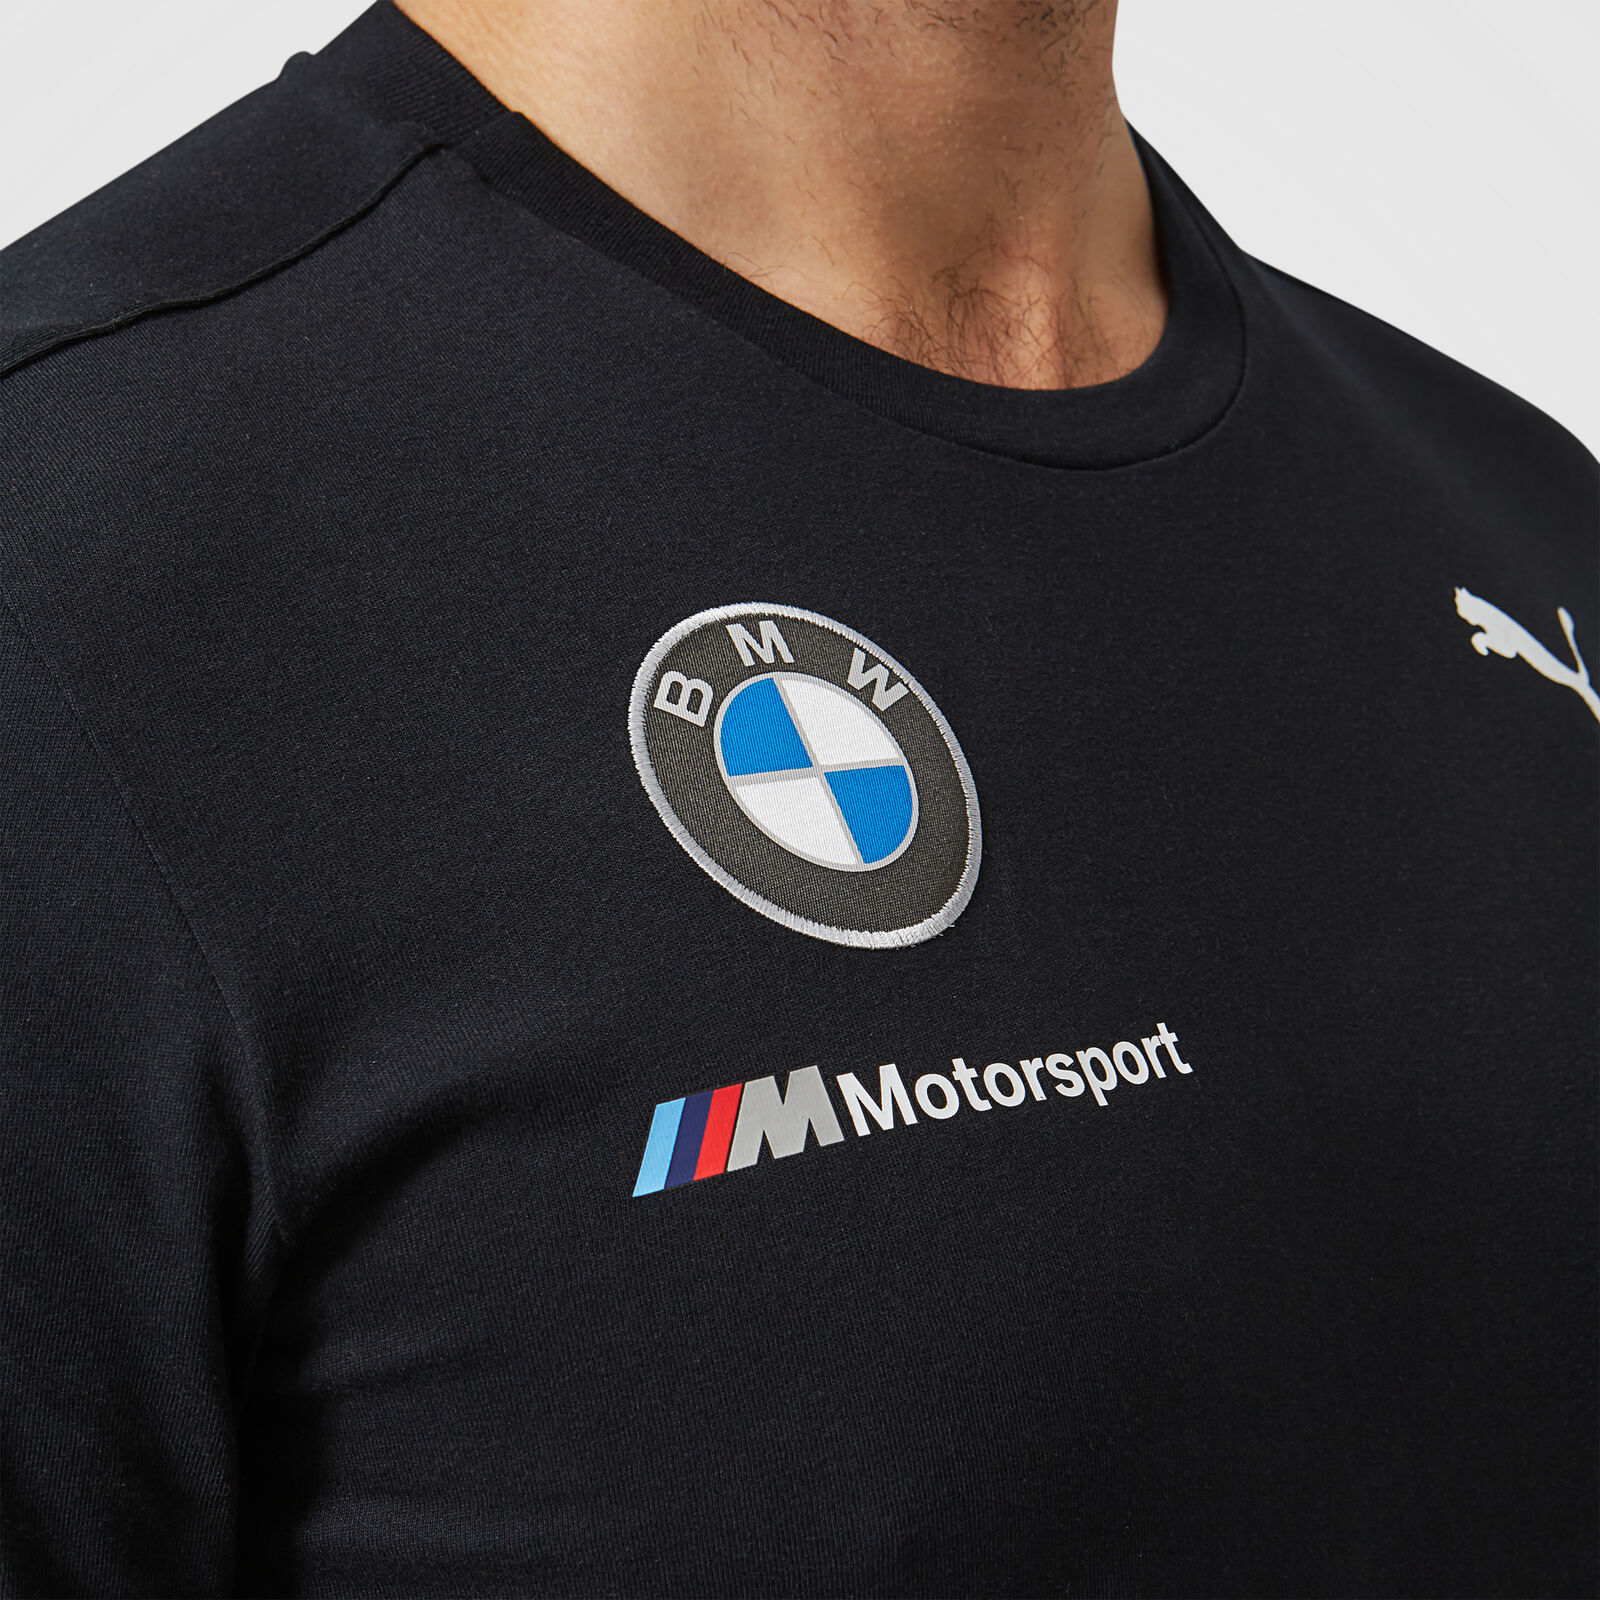 Team DTM T-Shirt - BMW Motorsport Fuel